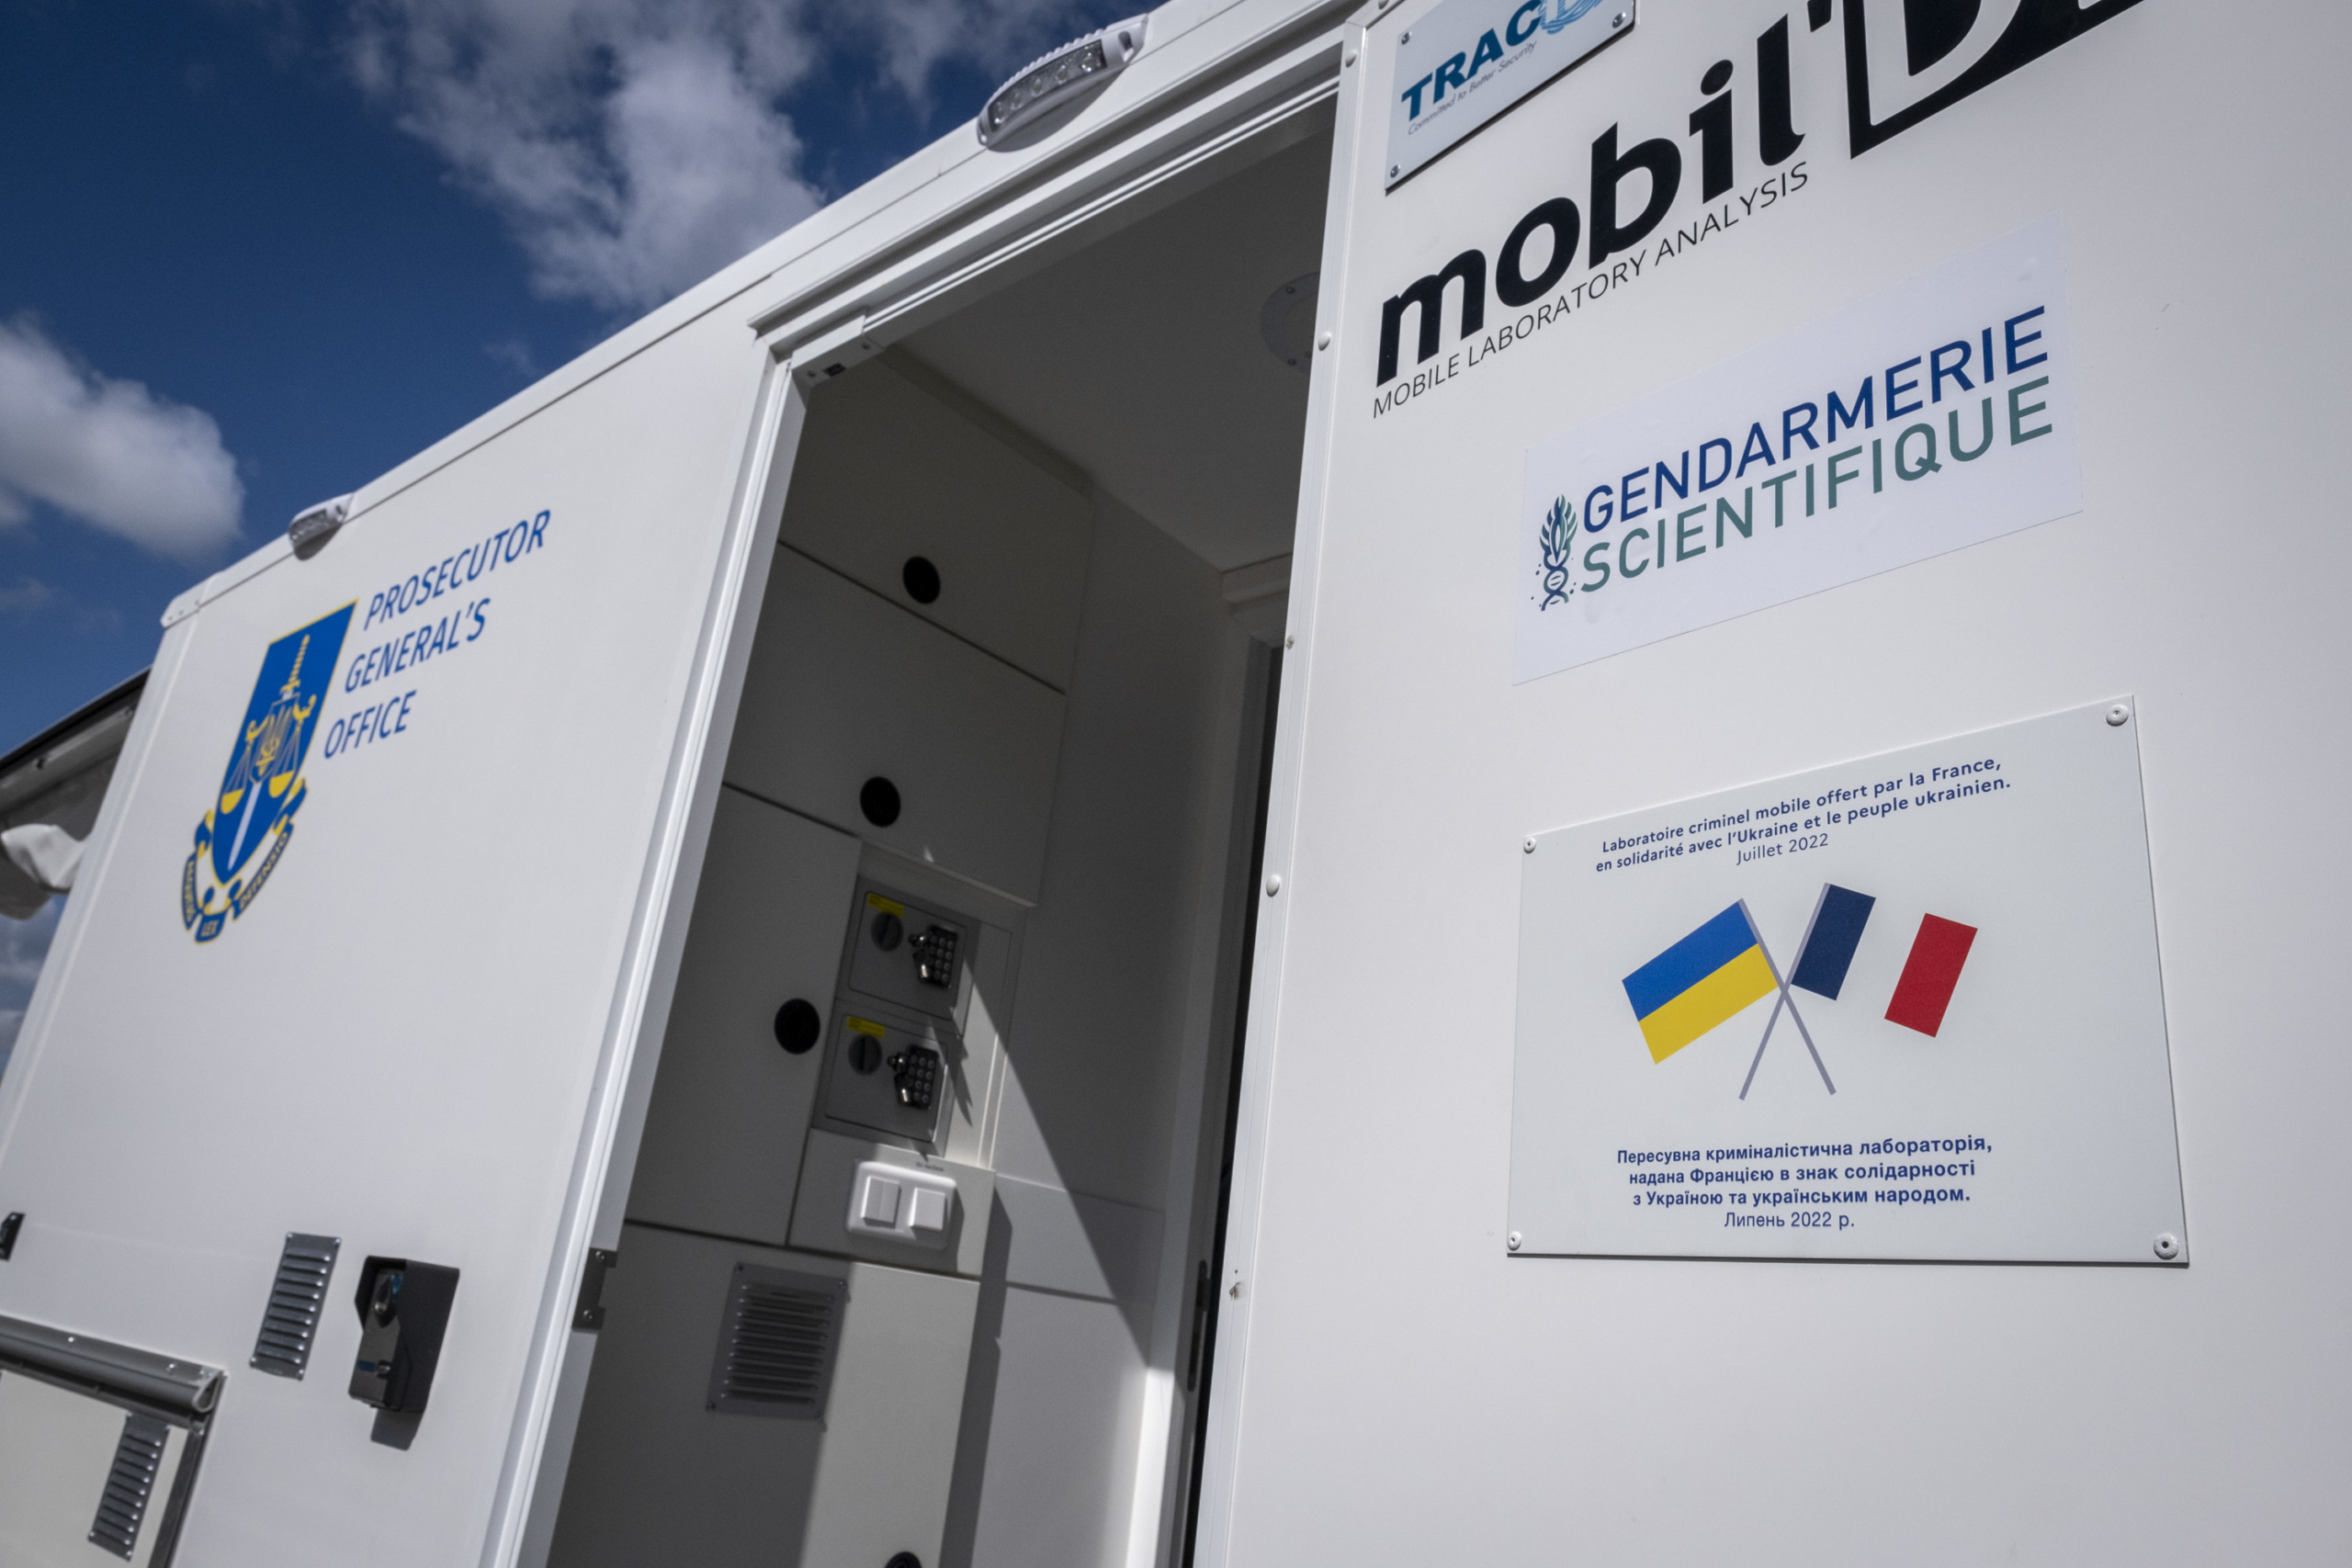 DEVERYWARE, adhérent et Champion 2020 Systematic, fournit un laboratoire Mobil’DNA à l’Ukraine